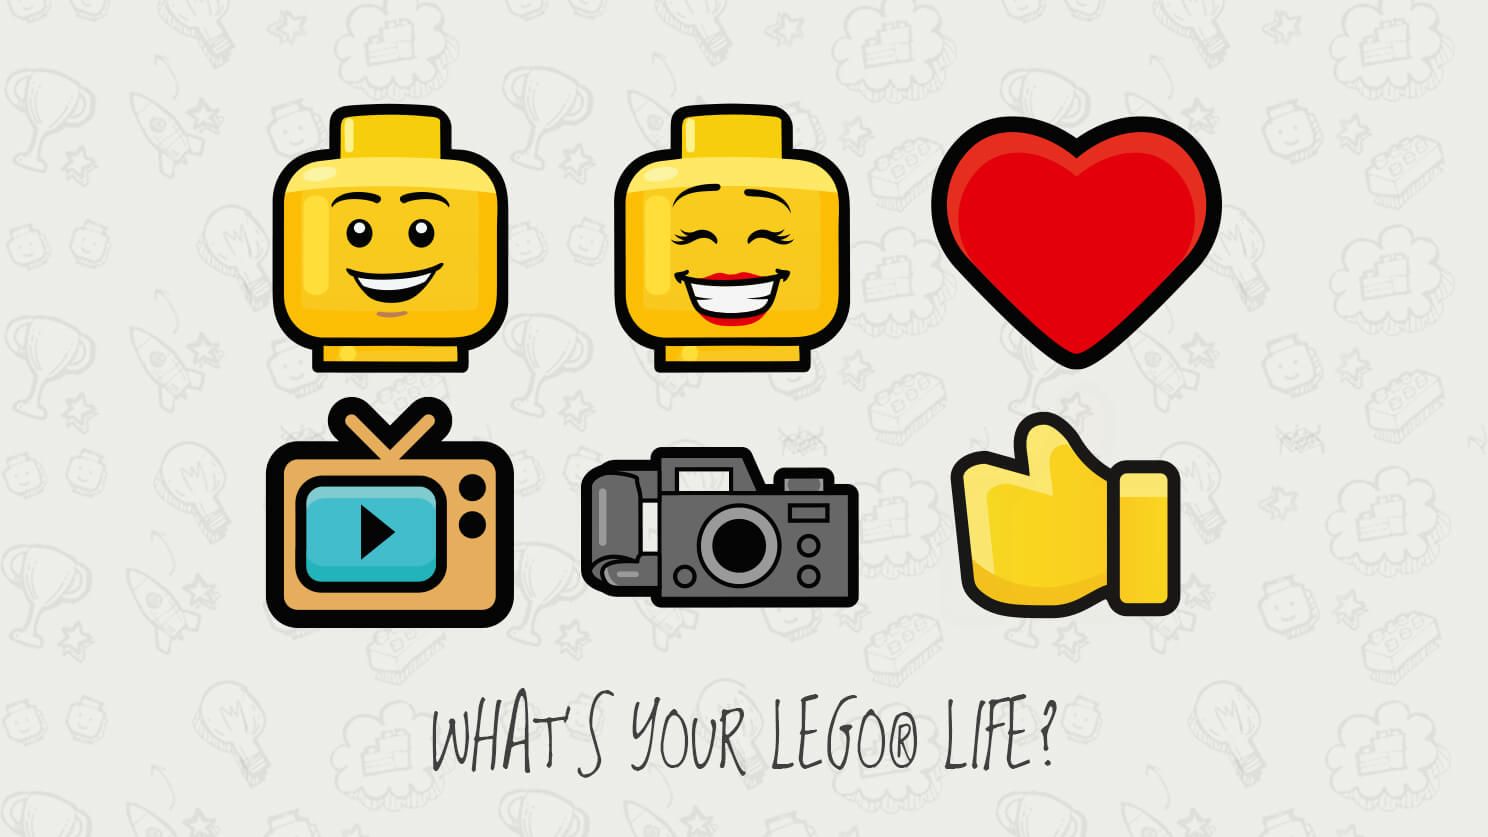 Líder v hračkárskom priemysle značka LEGO sa stále snaží udržať si popularitu medzi svojimi fanúšikmi. Tento krát prišiel so sociálnou sieťou, kde sa všetko točí okolo stavebníc lega.